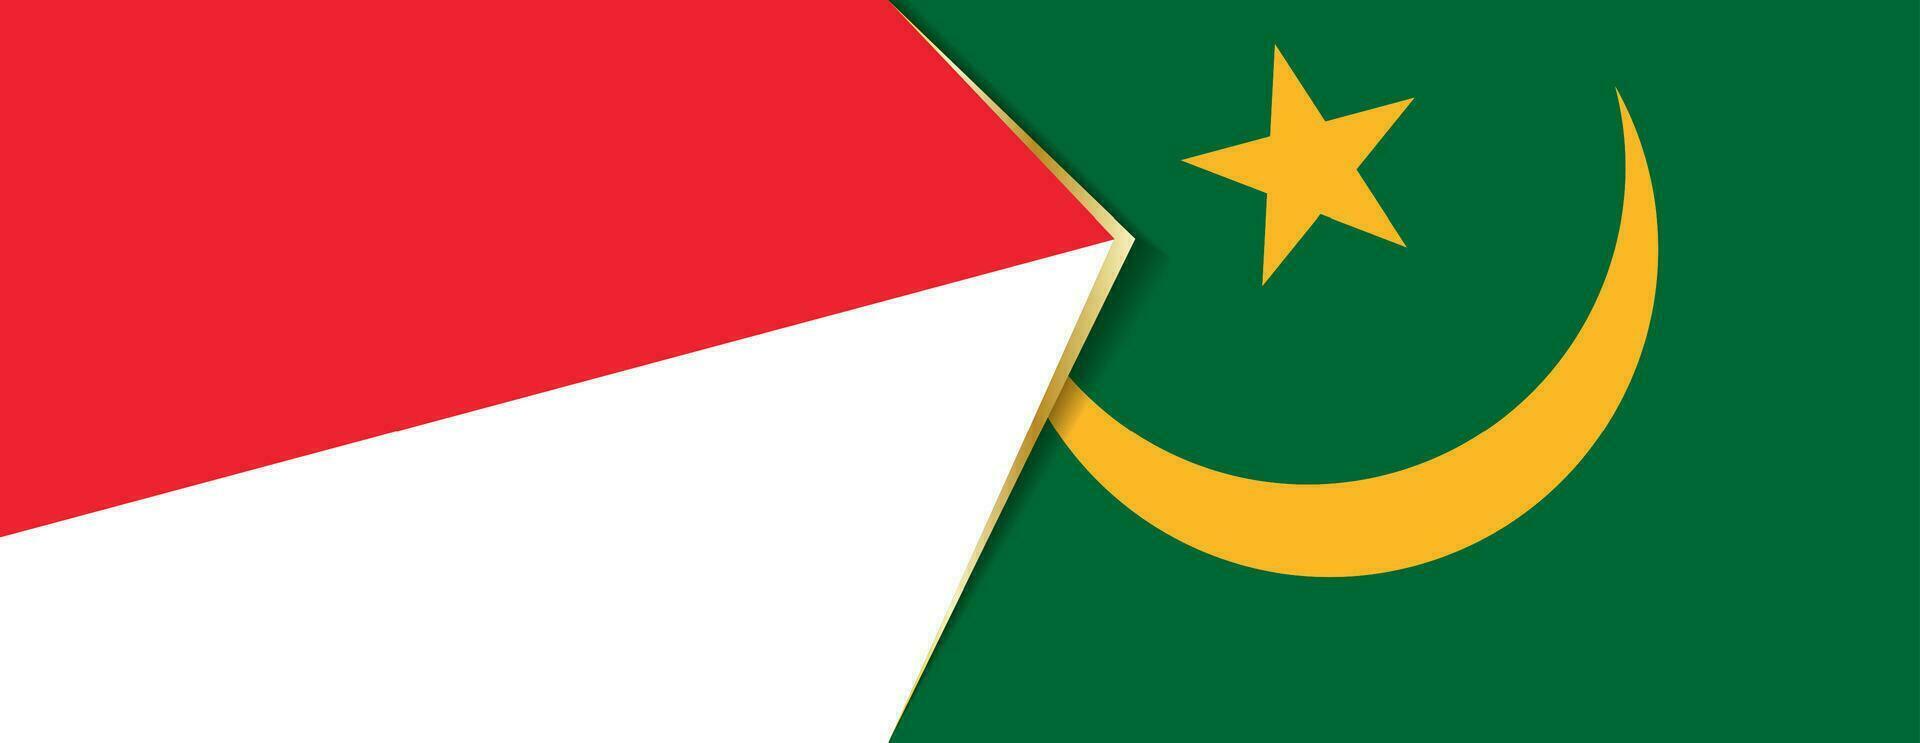 Indonesia e mauritania bandiere, Due vettore bandiere.